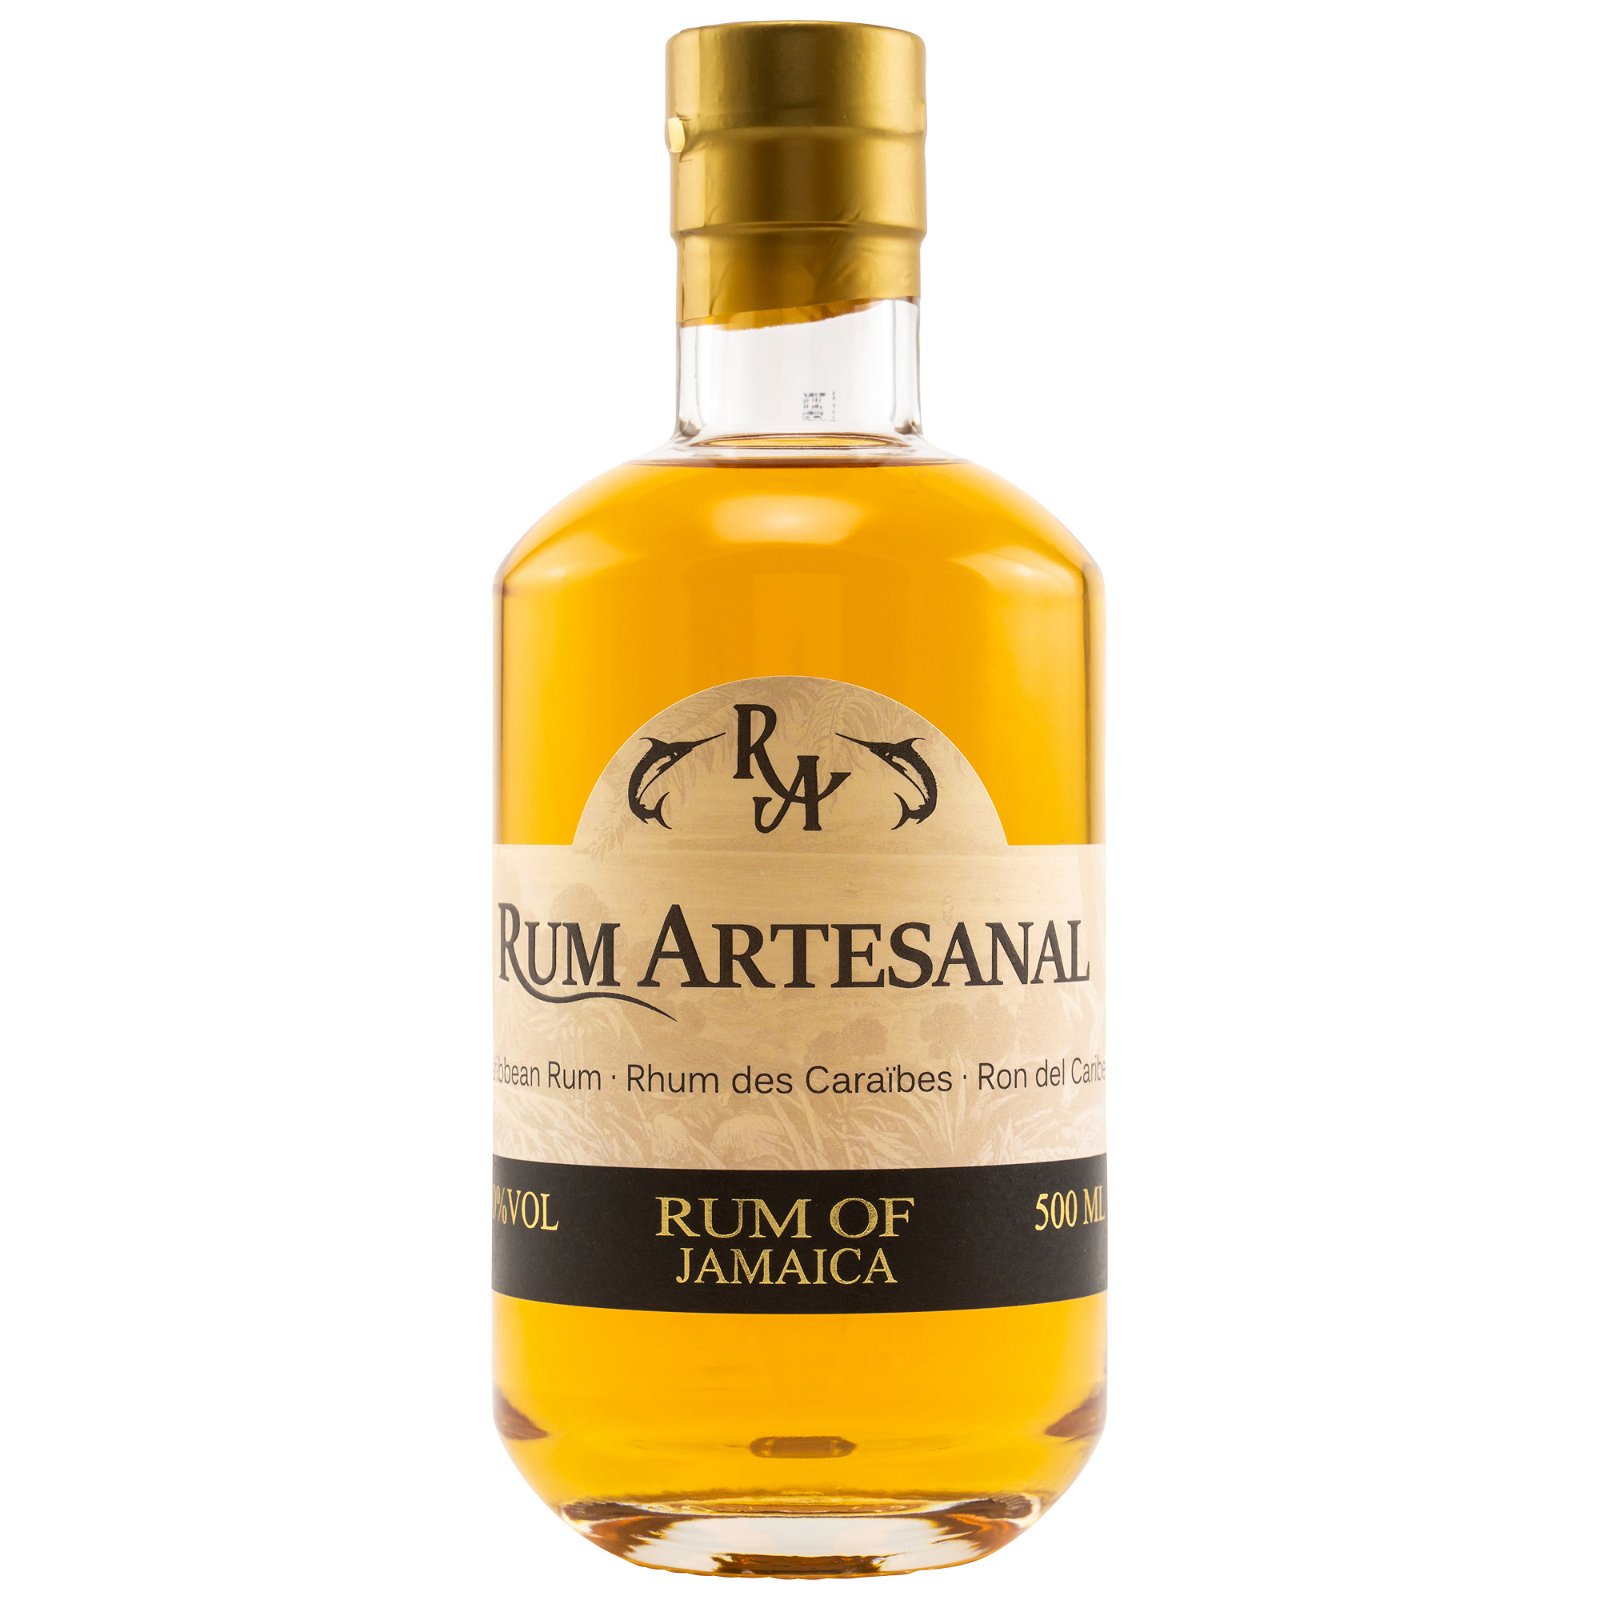 Rum of Jamaica (Rum Artesanal)